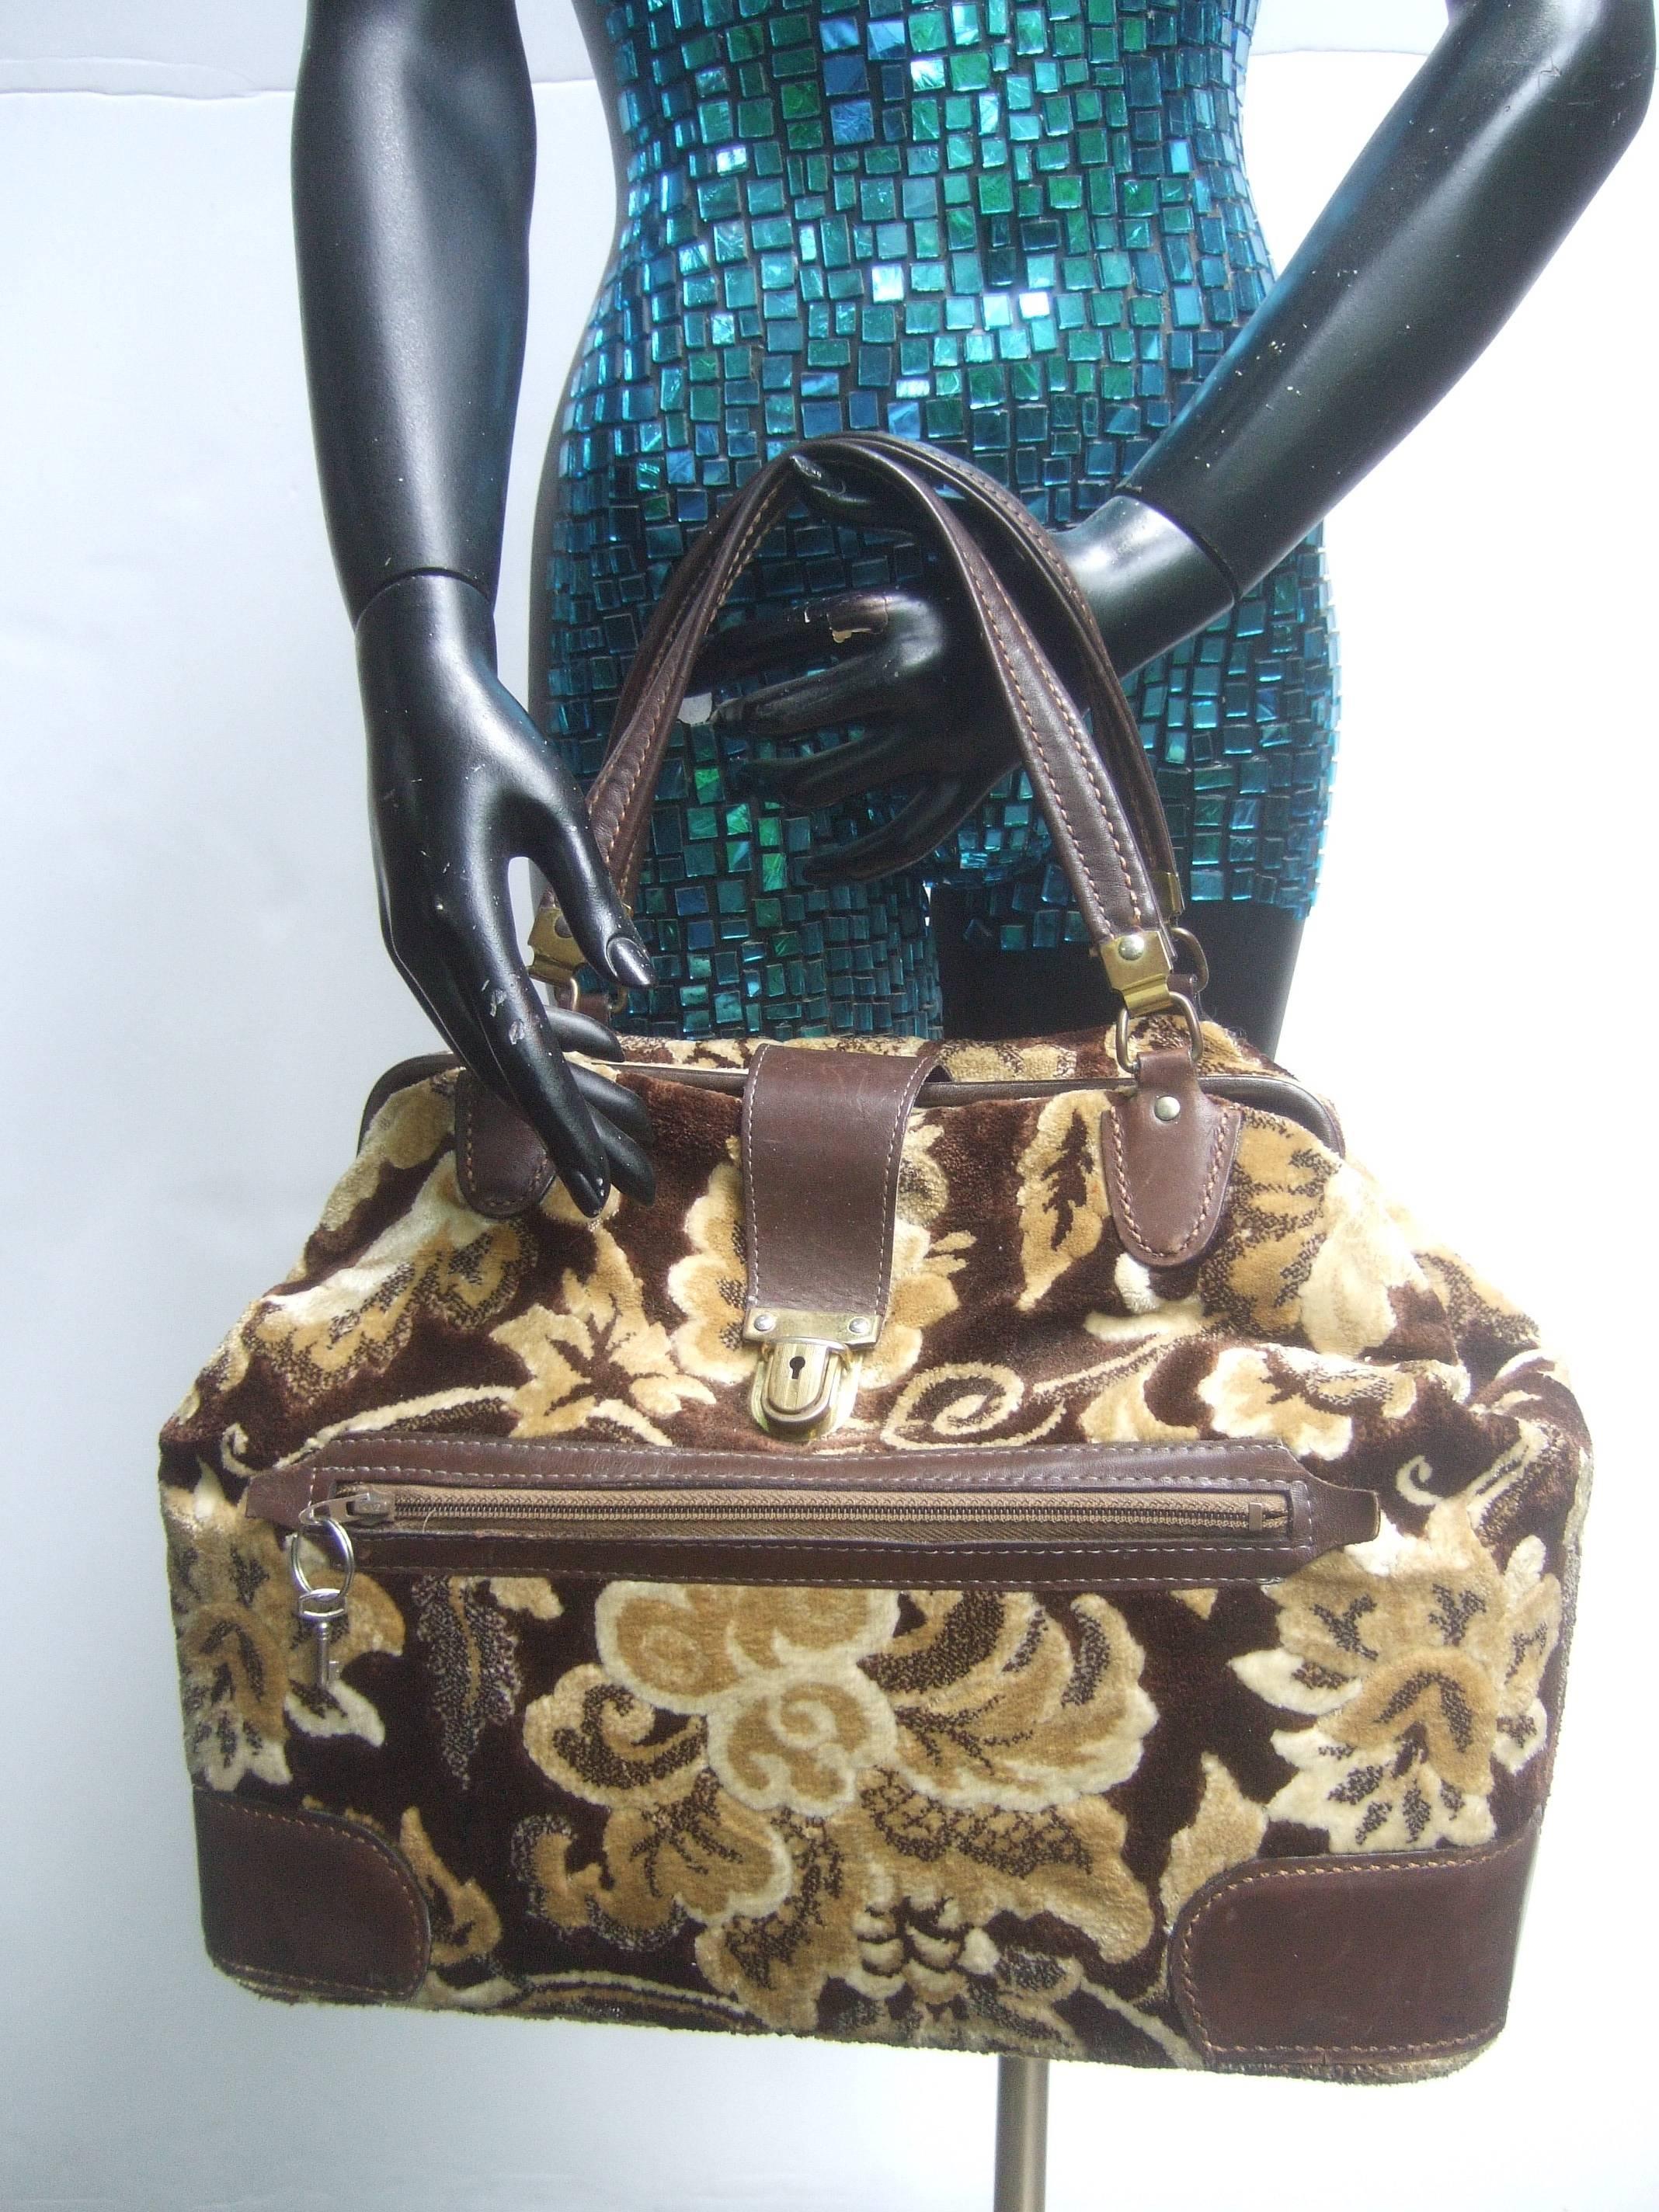 Étui de voyage élégant en cuir de brocart C.C. 1970
La luxueuse valise de voyage en brocart est recouverte
avec un feuillage d'automne dont les couleurs varient de 
marron, tan et beige

Les deux poignées, le cadre du fermoir et les coins